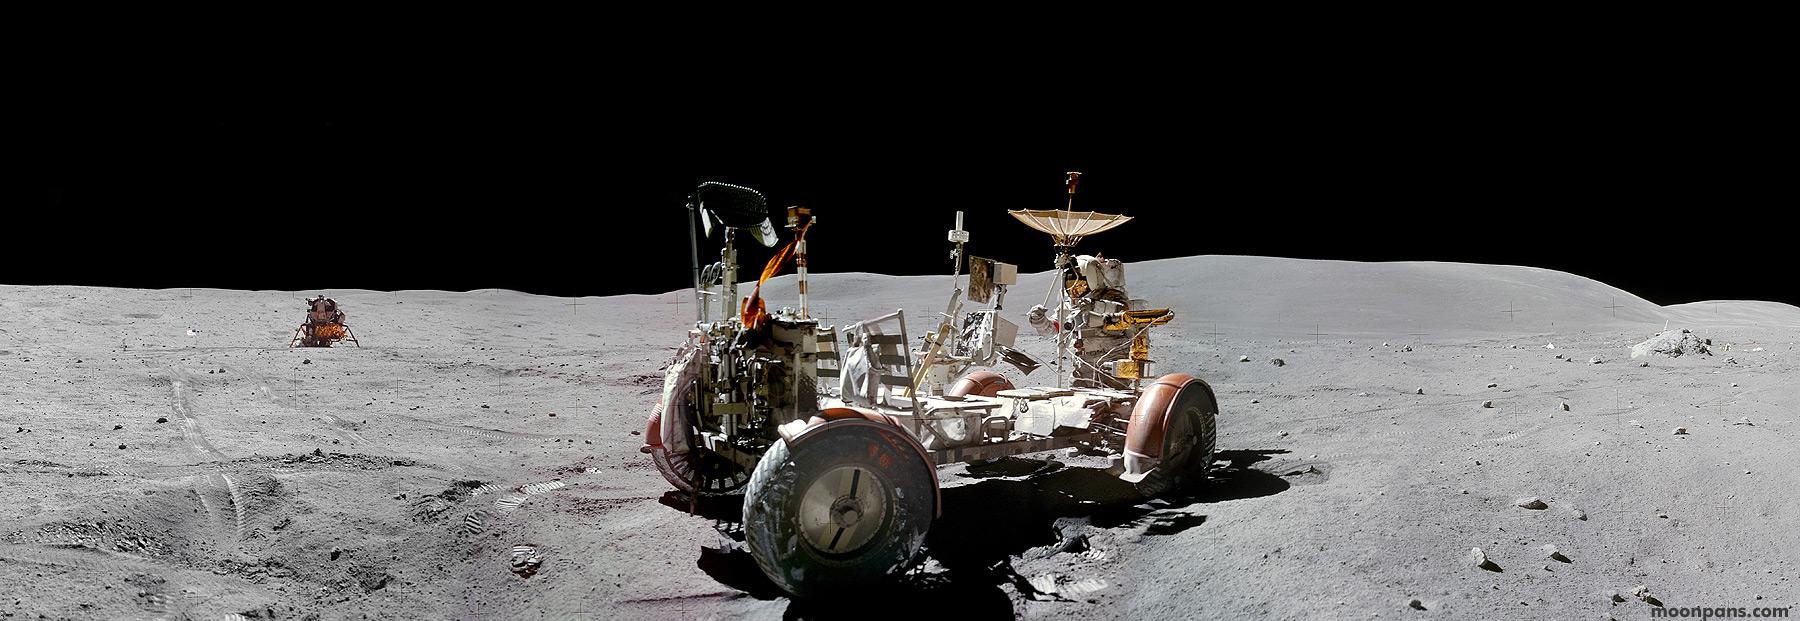 مركبة جوّالة على سطح القمر وخلفها رائد فضاء ببدلته يقوم بتوجيه هوائي بصحن باتّجاه الأعلى وفي الخلفيّة وحدة قمريّة